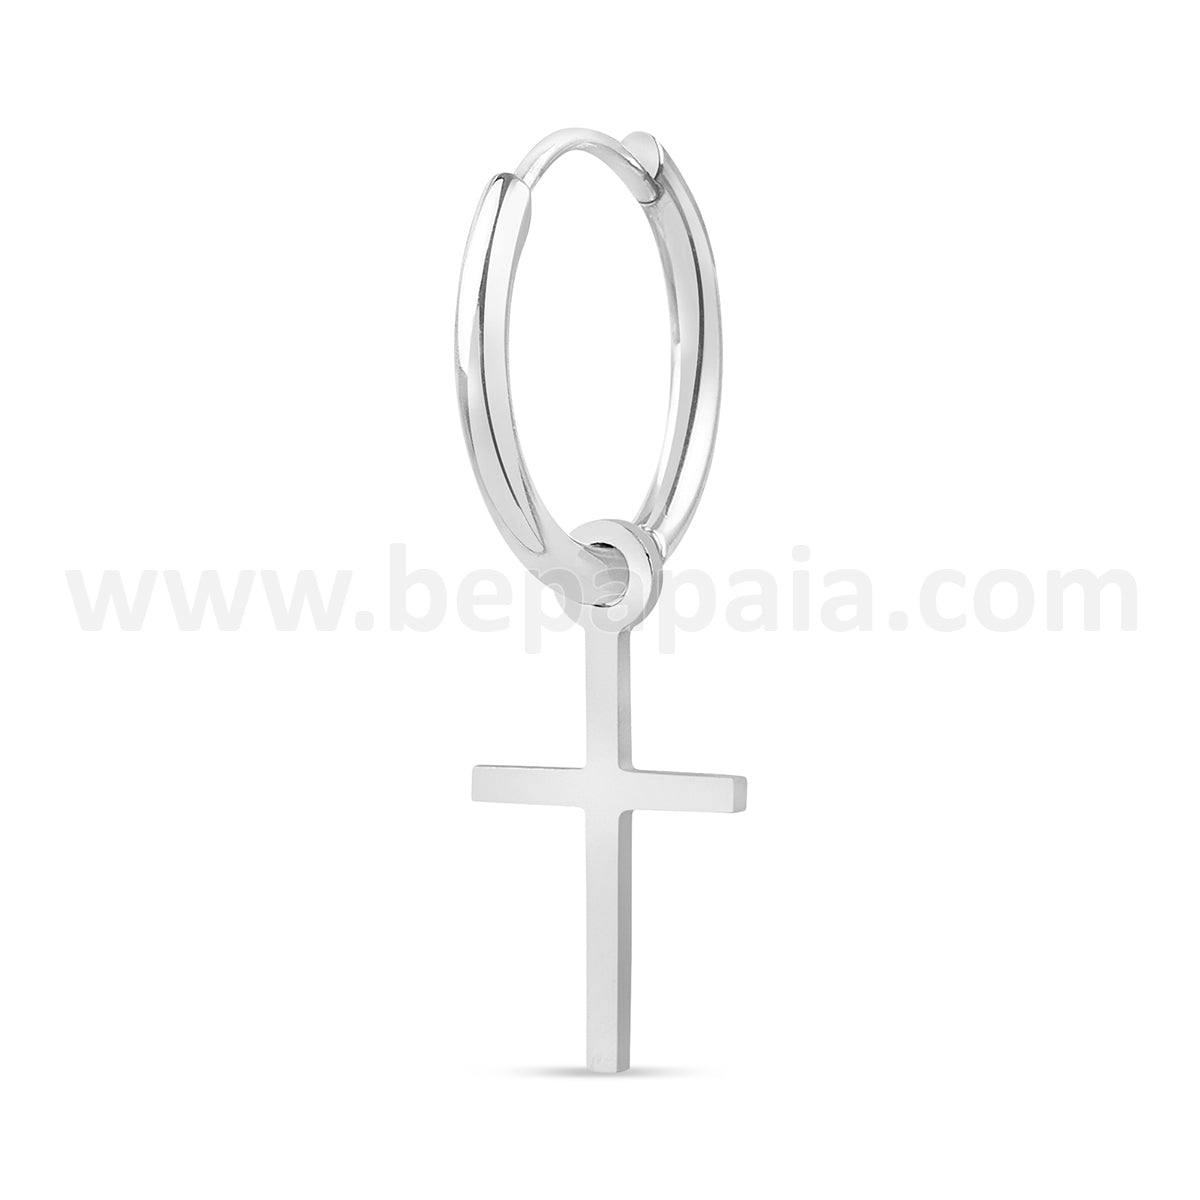 Steel hoop earring with small cross